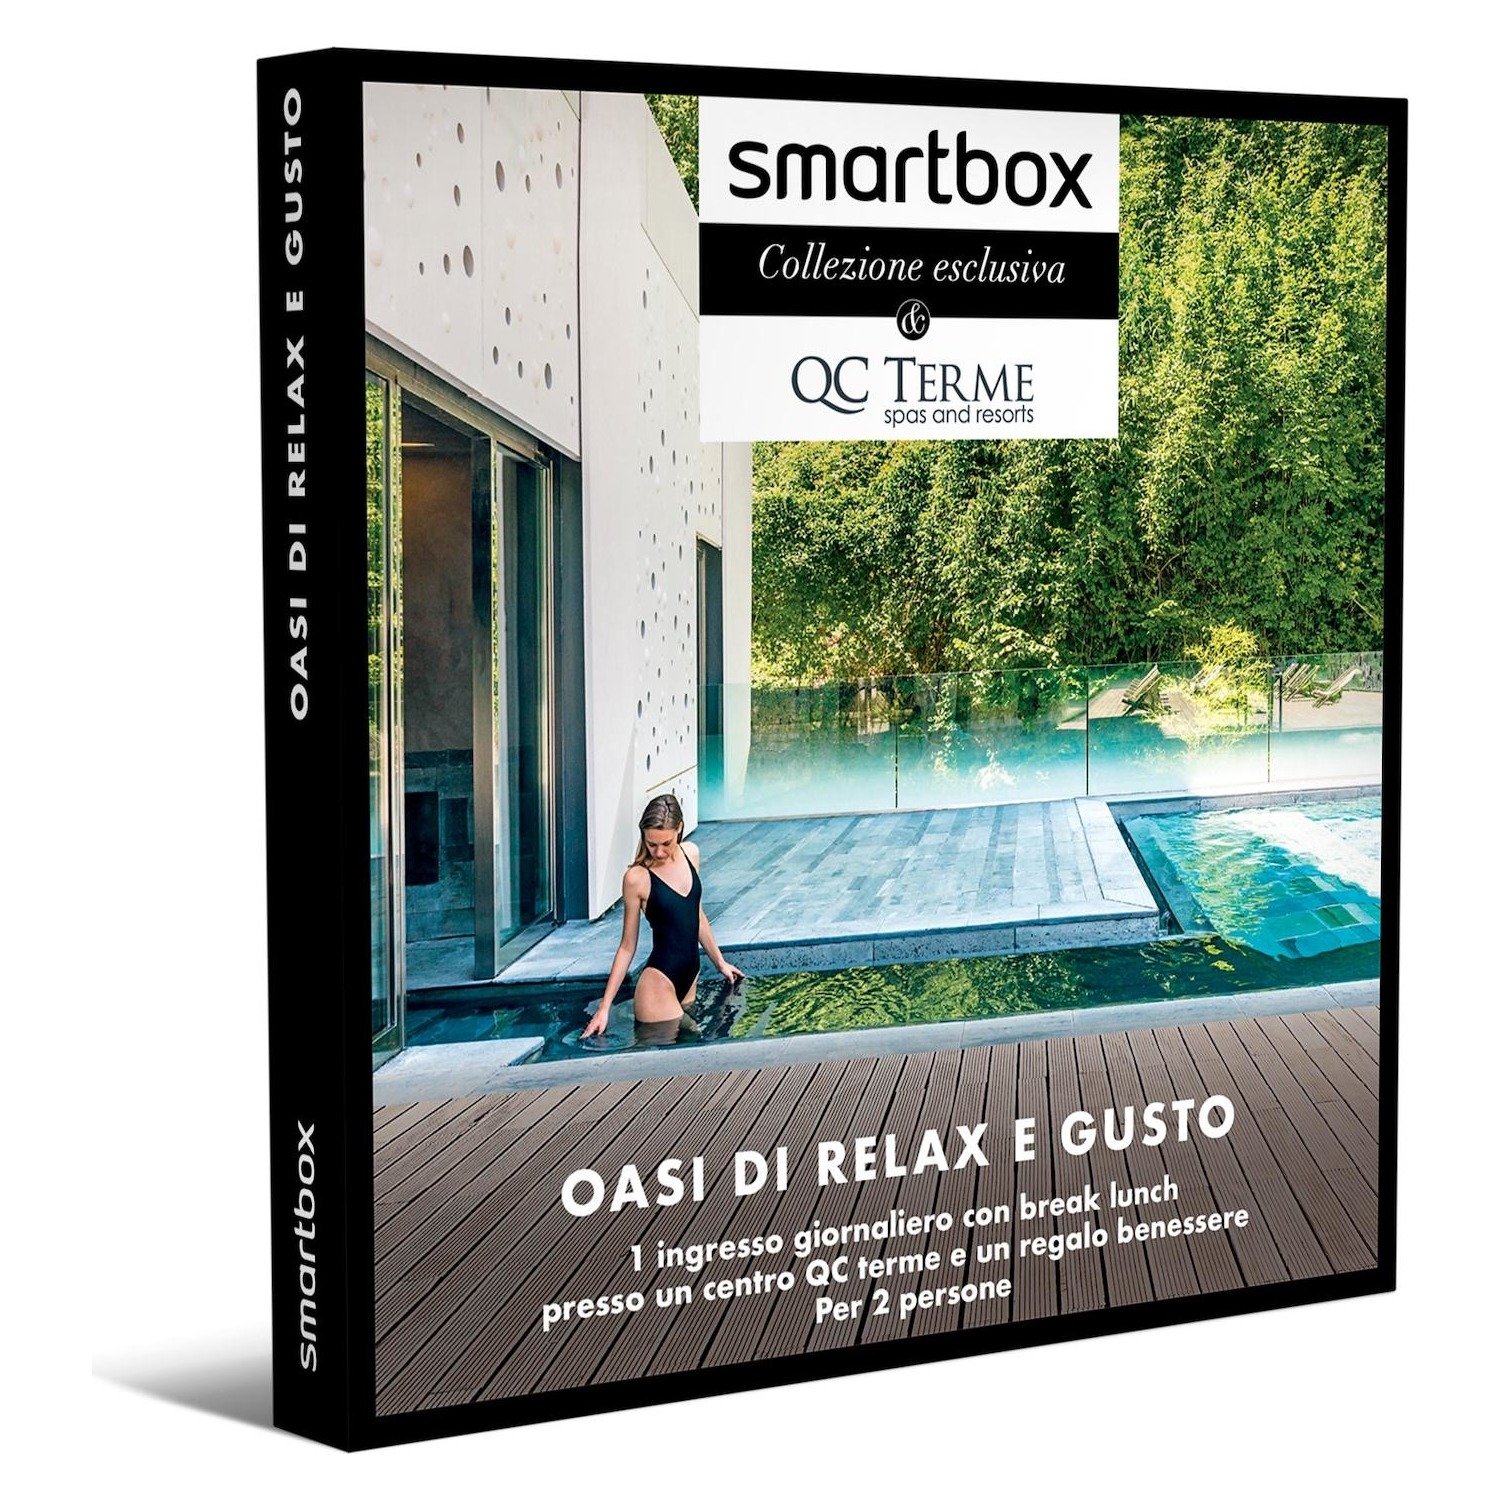 Immagine per Cofanetto Regalo Smartbox Oasi di relax e gusto da DIMOStore